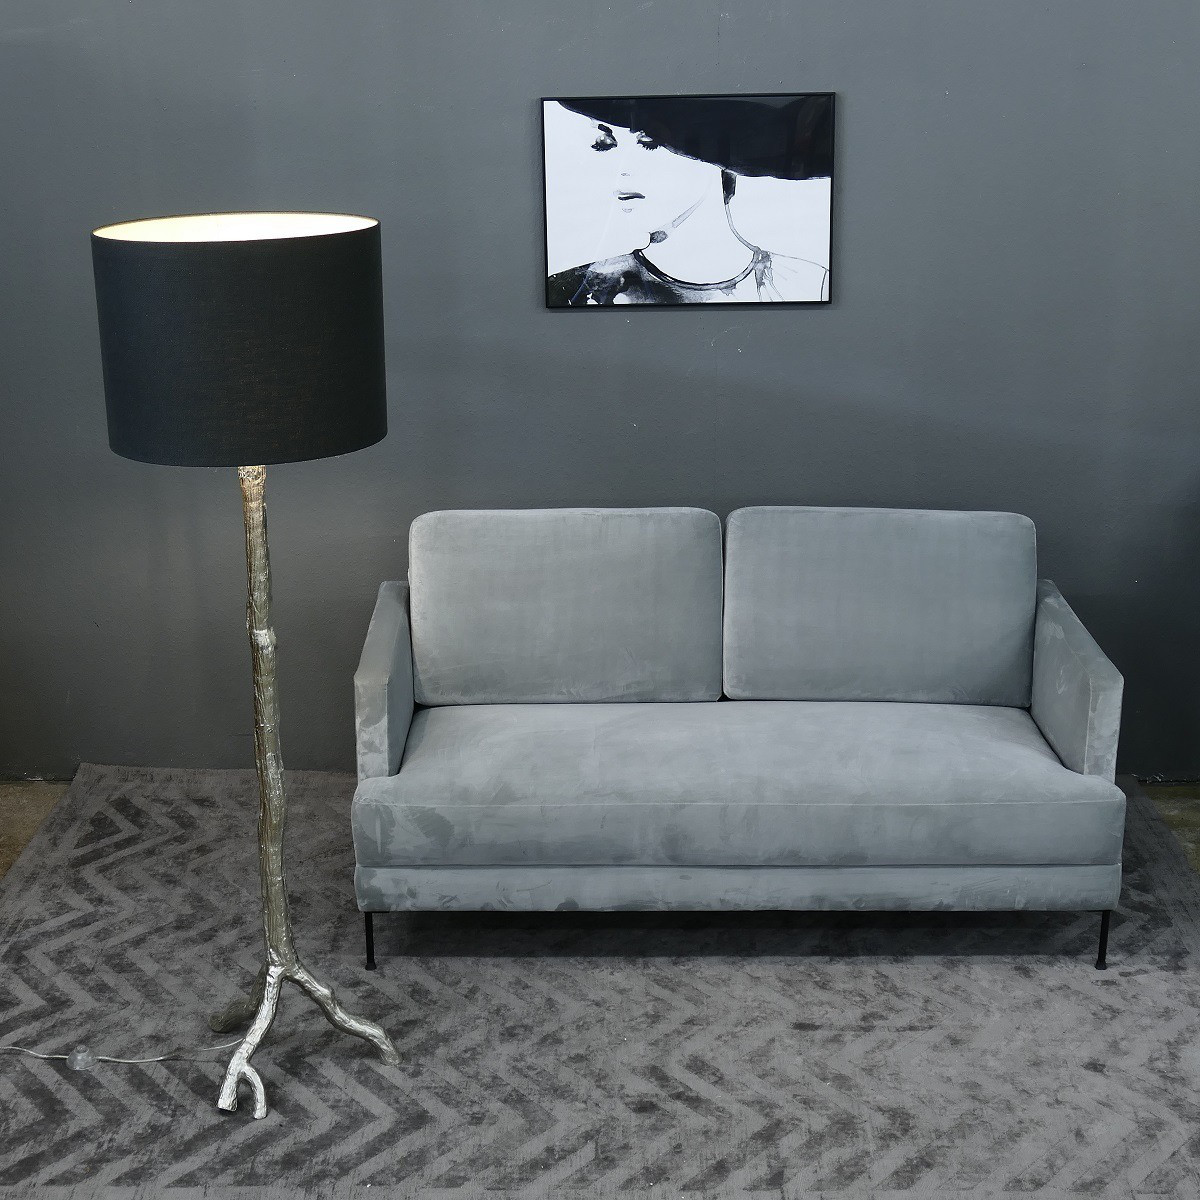 Designer Leuchte Stehleuchte Lampe Stehlampe Silber / Black Höhe 66 cm 